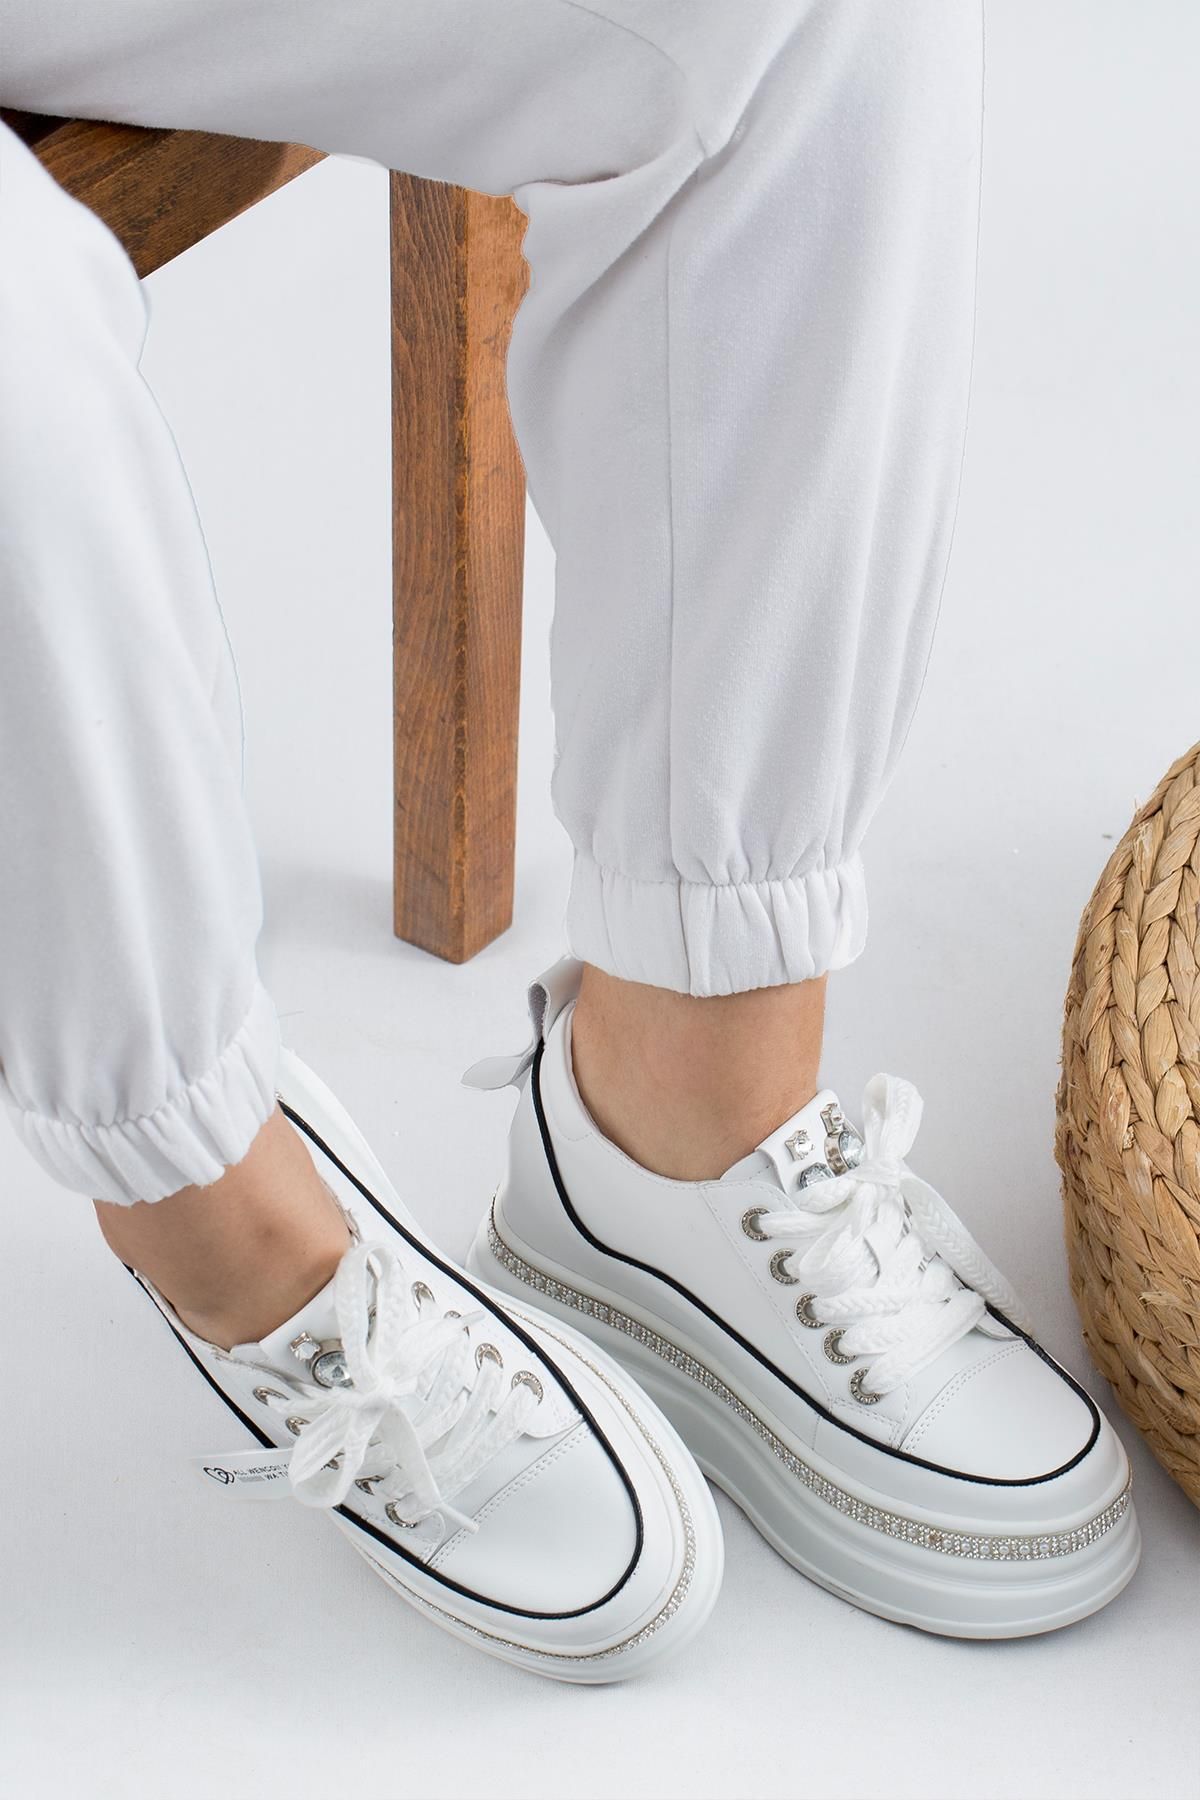 KRISTE BELL Taş Detaylı Iyhal Kadın Spor Ayakkabı K25-0004 Beyaz